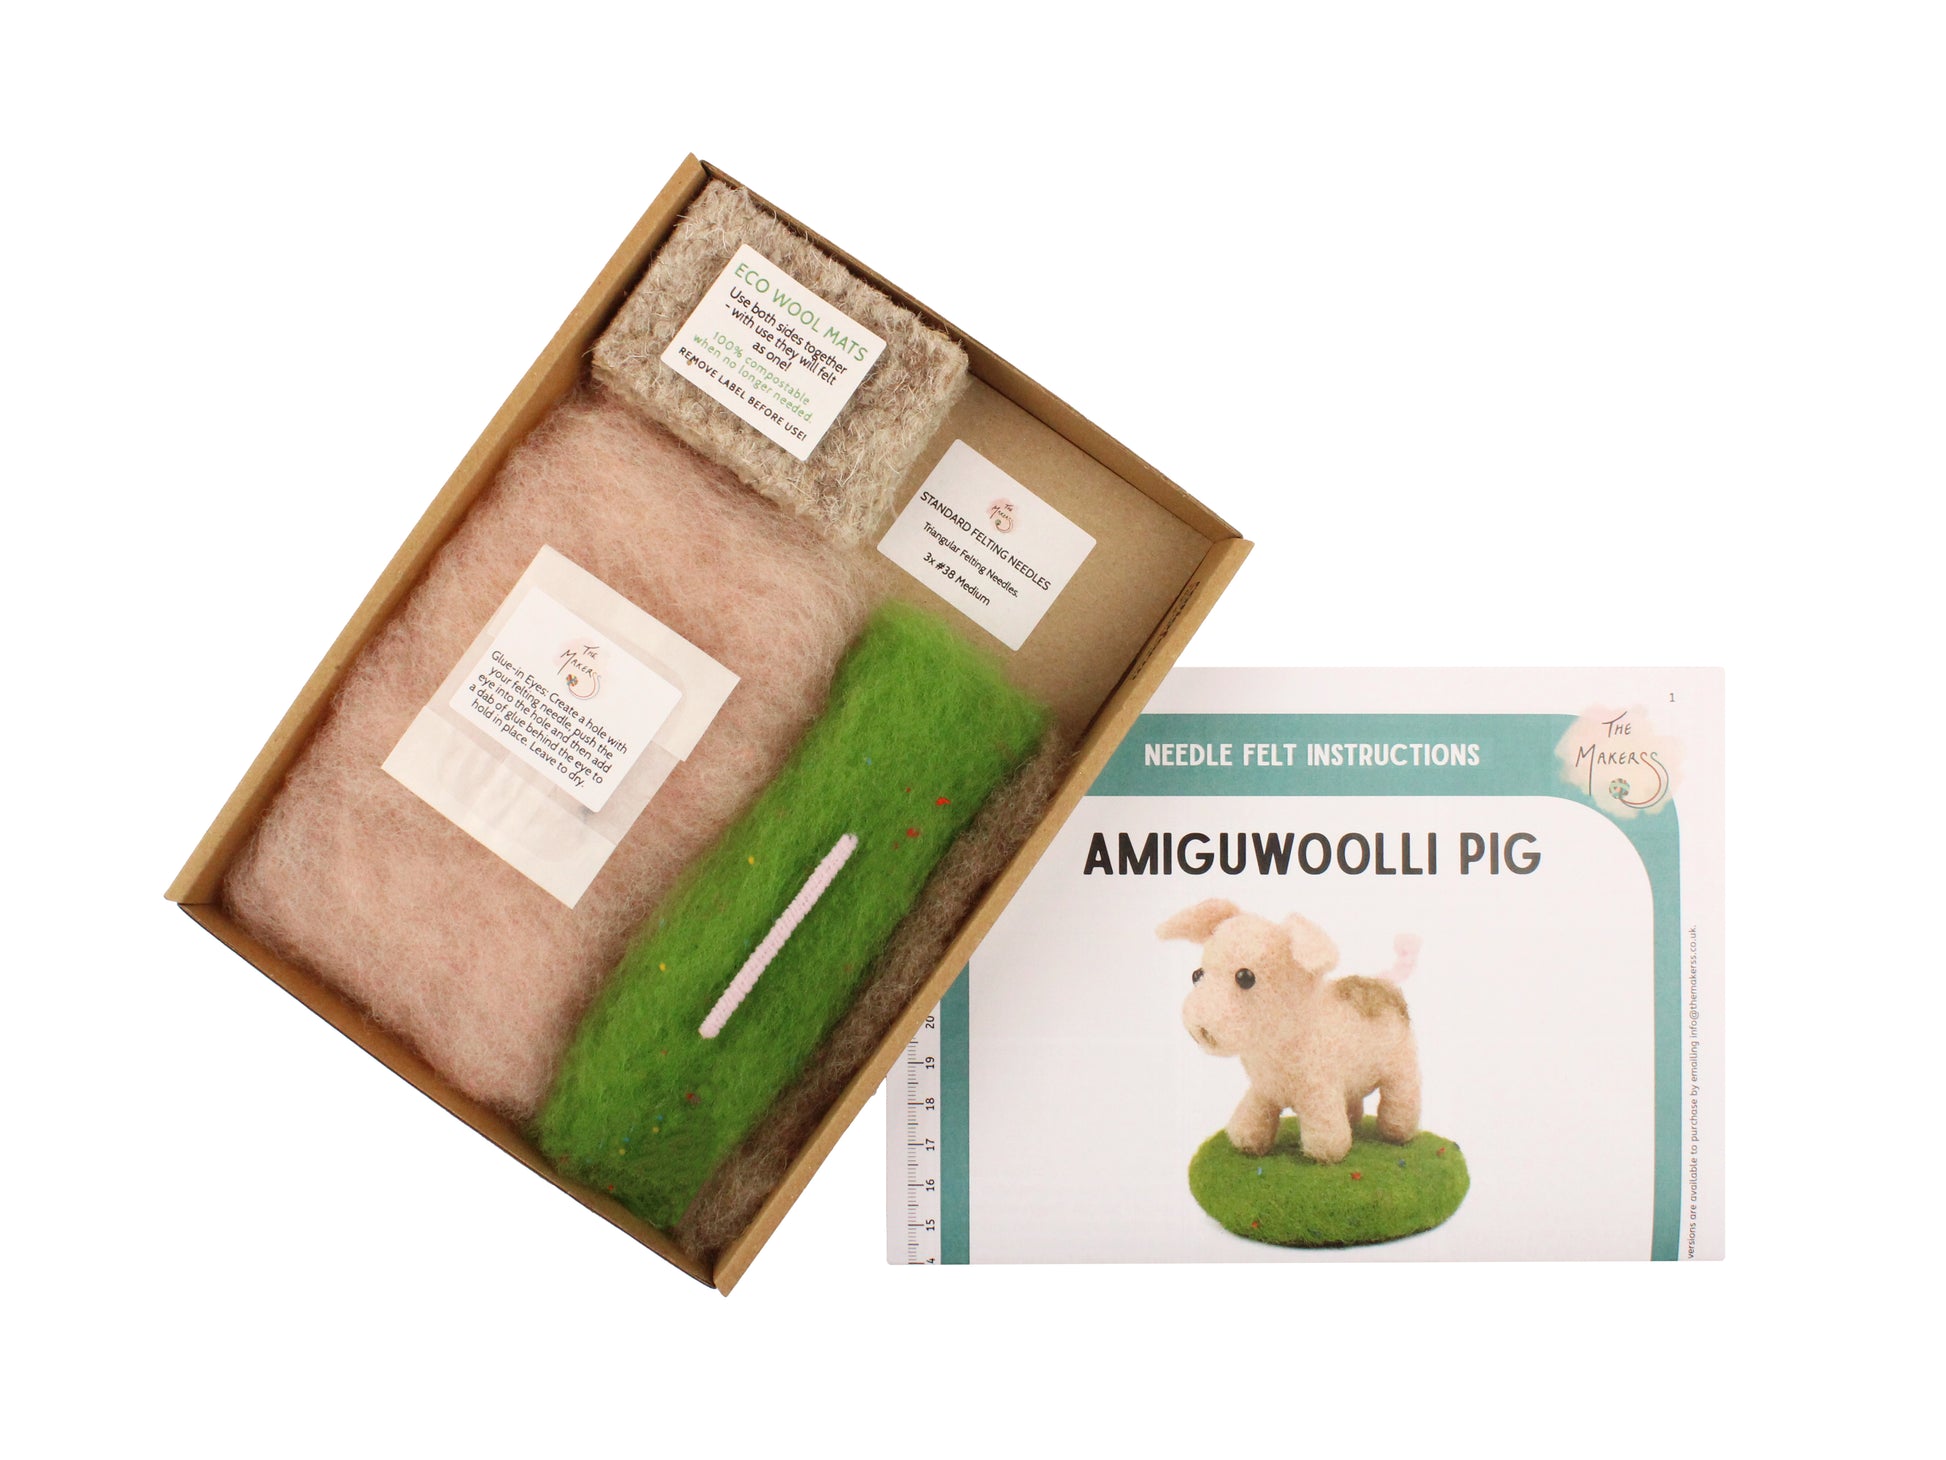 Pig Amiguwoolli Mini Needle Felt Kit - The Makerss